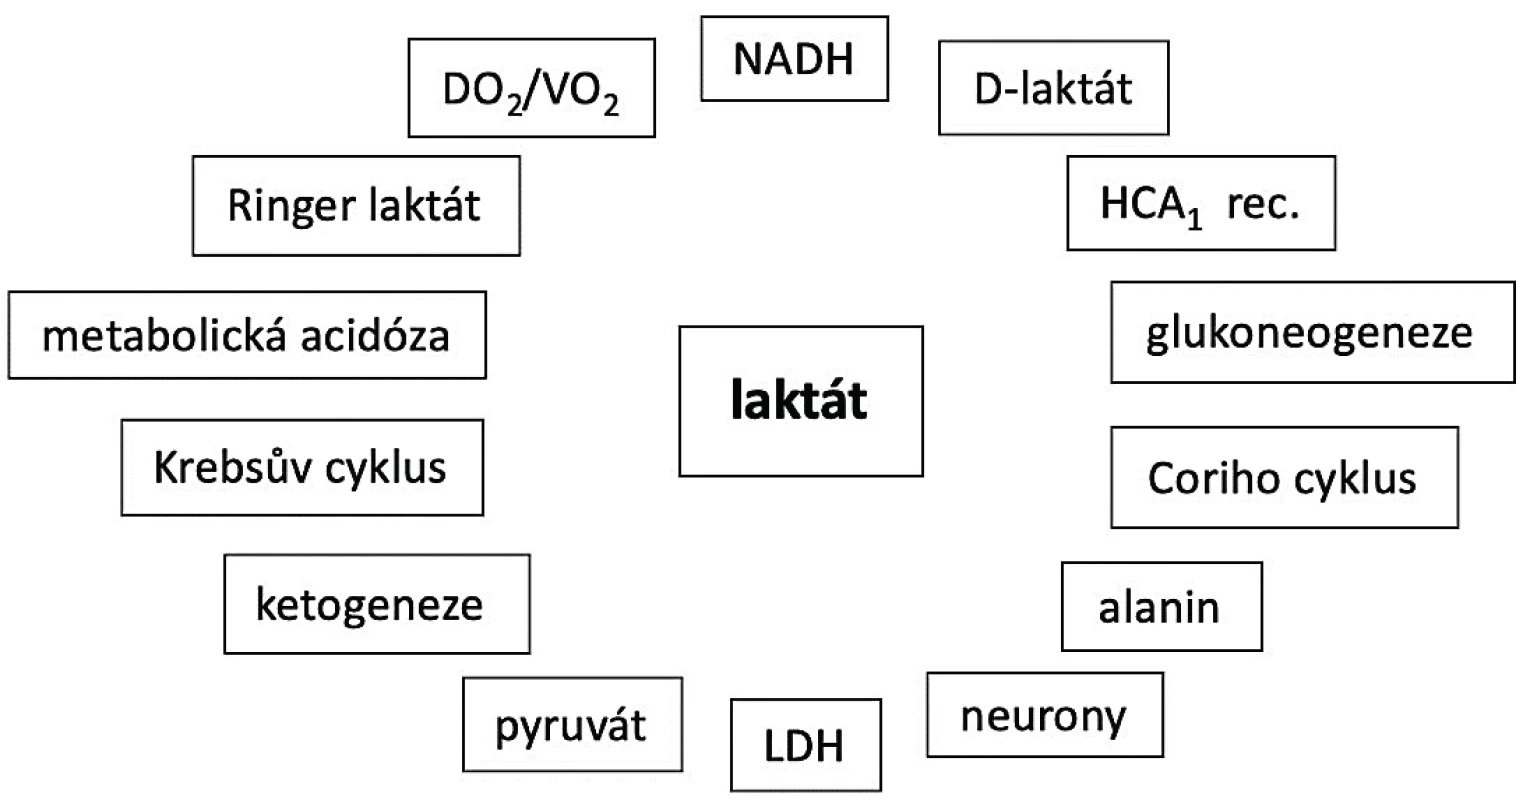 Komplexnost laktátového metabolismu
NADH – nikotinadenindinukleotid, LDH – laktát dehydrogenáza,
HCA1 – hydroxycarboxilic acid receptor 1